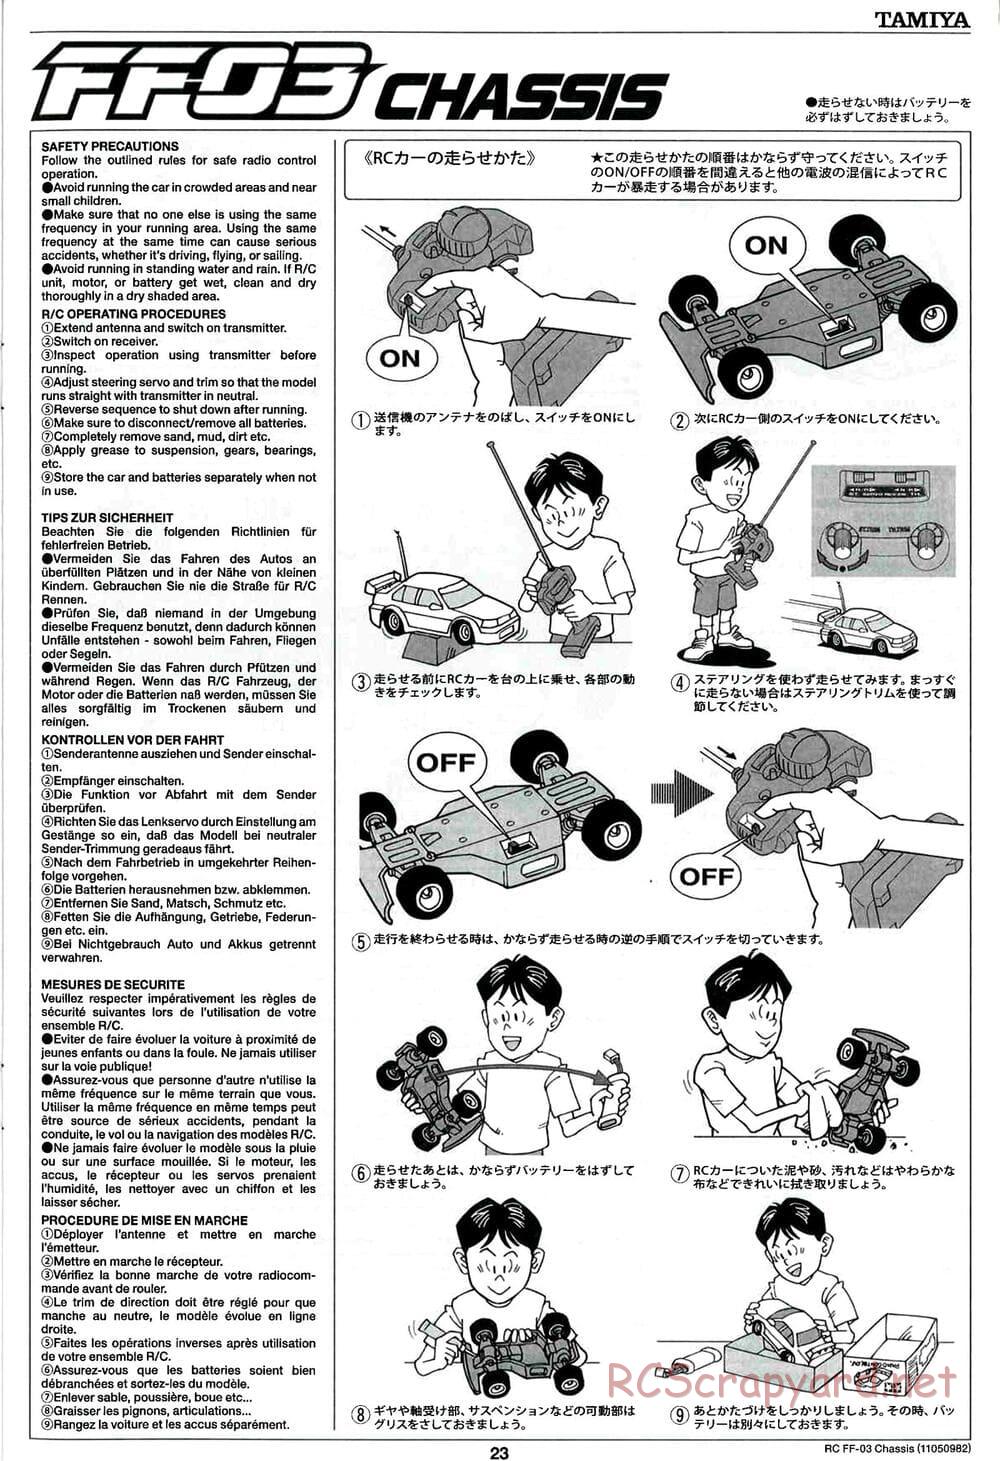 Tamiya - Castrol Honda Civic VTi - FF-03 Chassis - Manual - Page 23